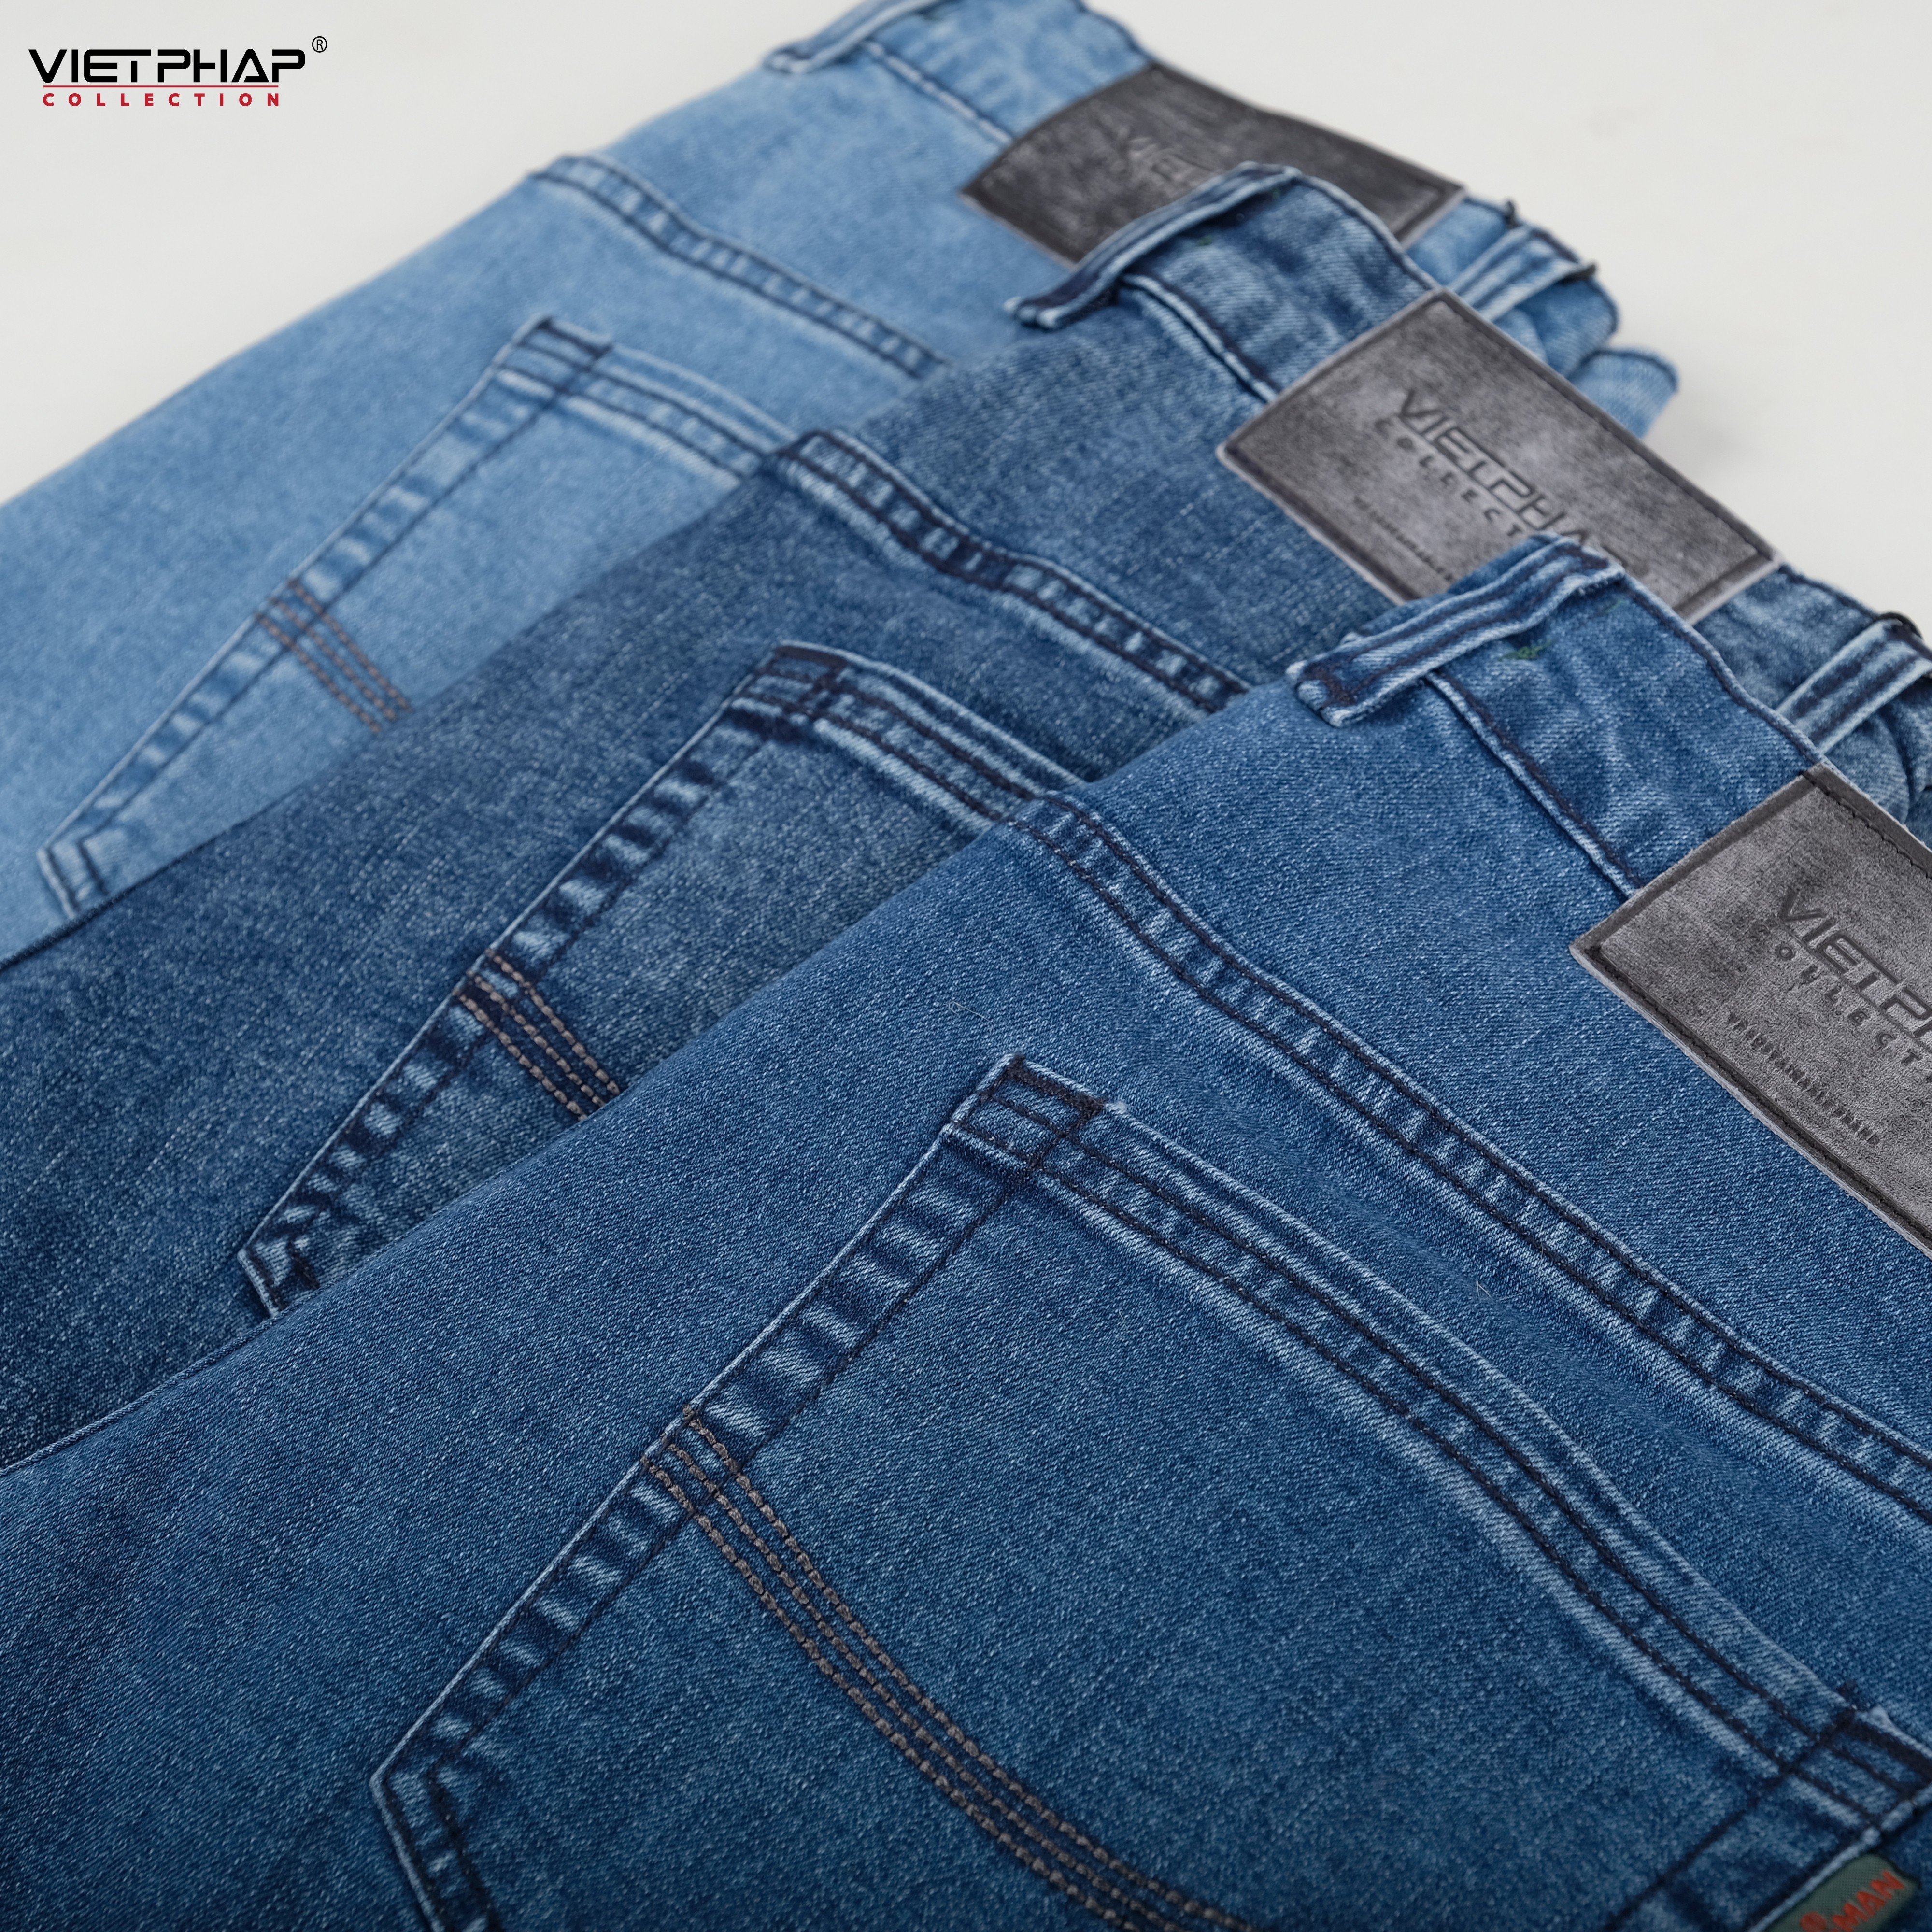 Quần Short Jeans Nam VIỆT PHÁP/ Chất Cotton Cao Cấp co giãn, độ bền màu cao 0313